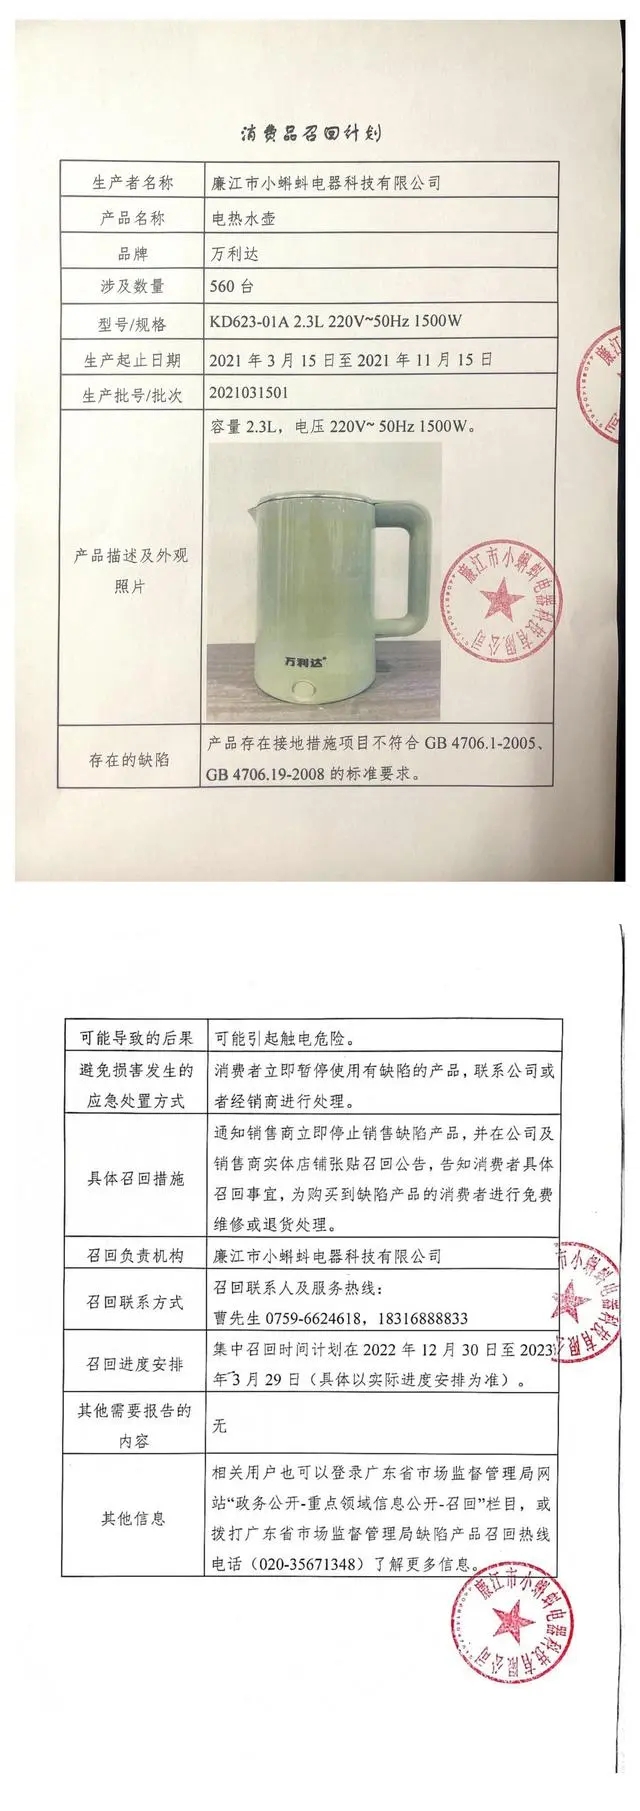 廉江市小蝌蚪电器科技有限公司召回部分万利达牌电热水壶